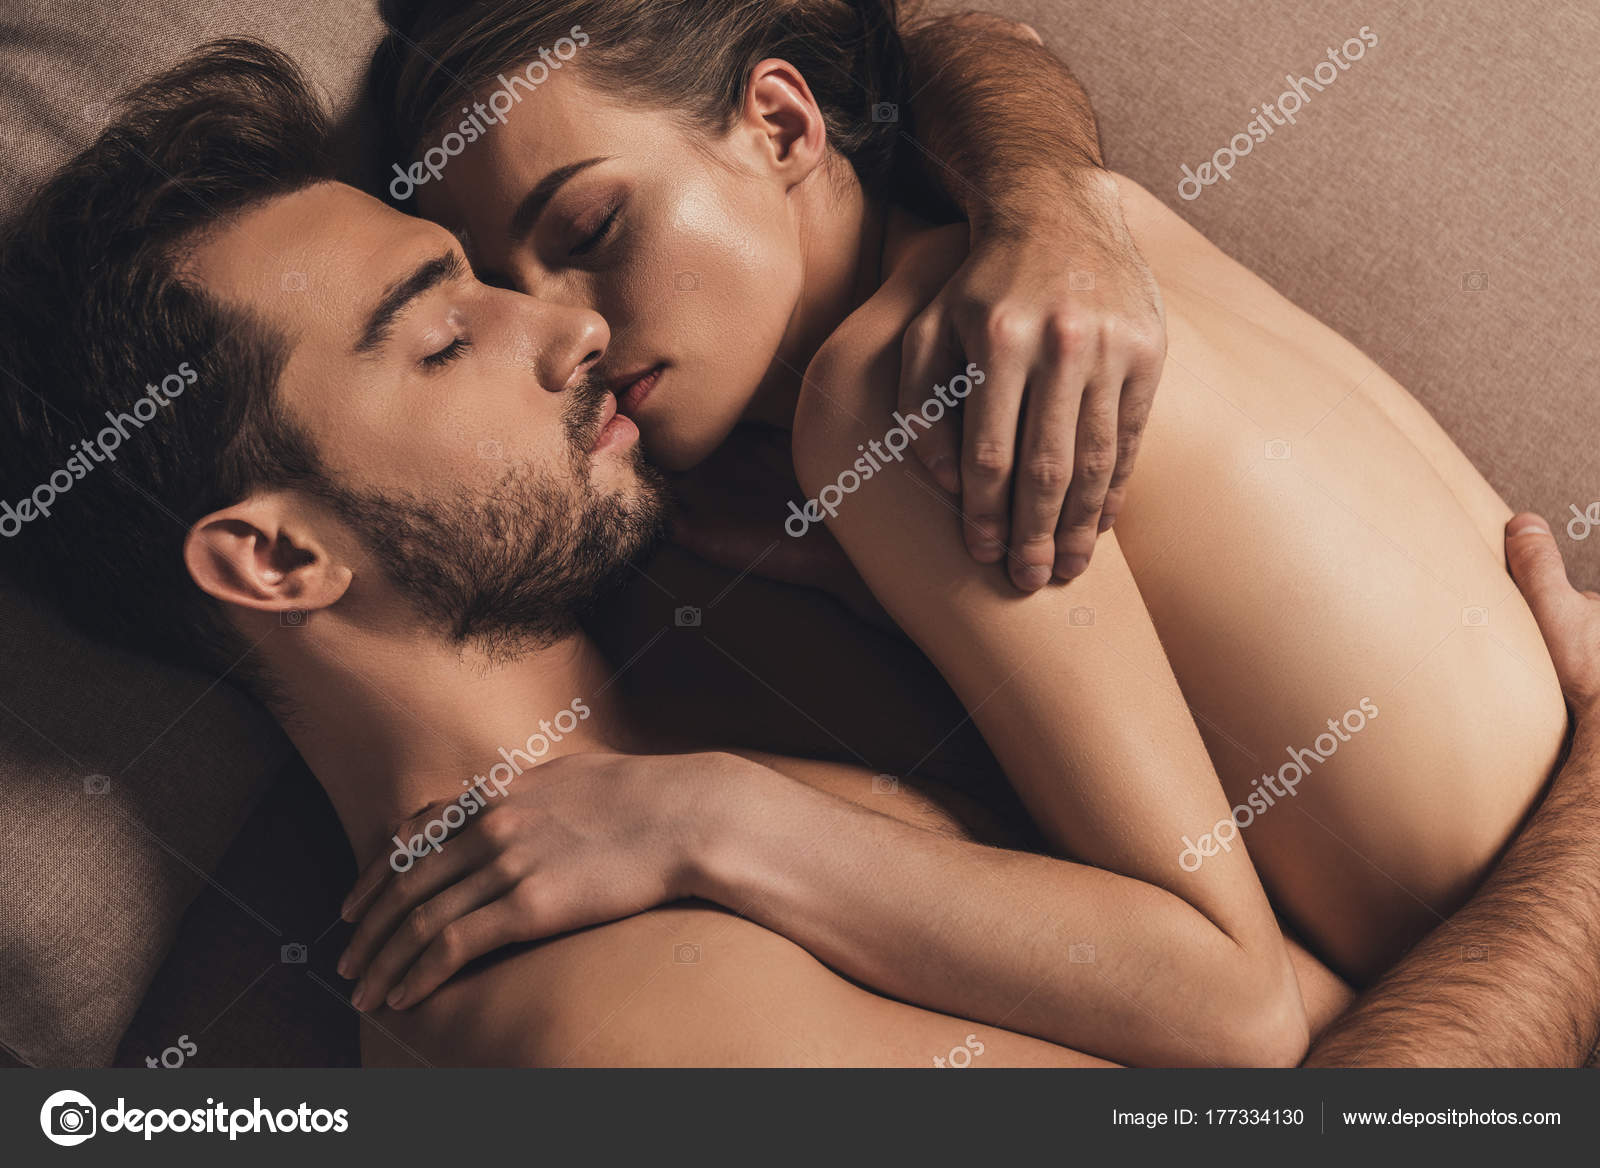 Sexy naked boys sleep together